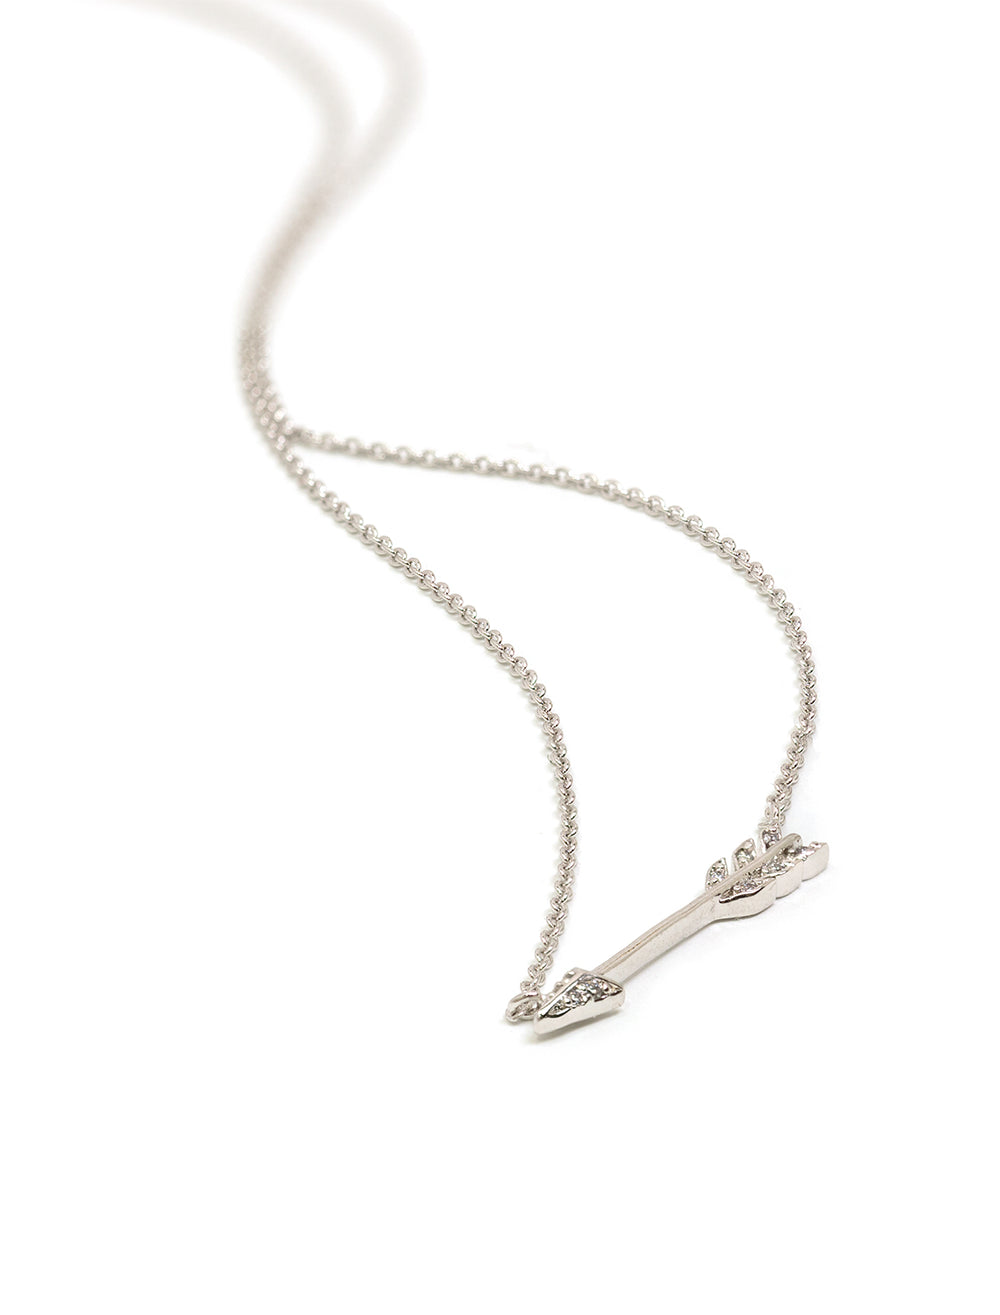 Stylized laydown of Tai Jewelry's medium arrow necklace in silver.